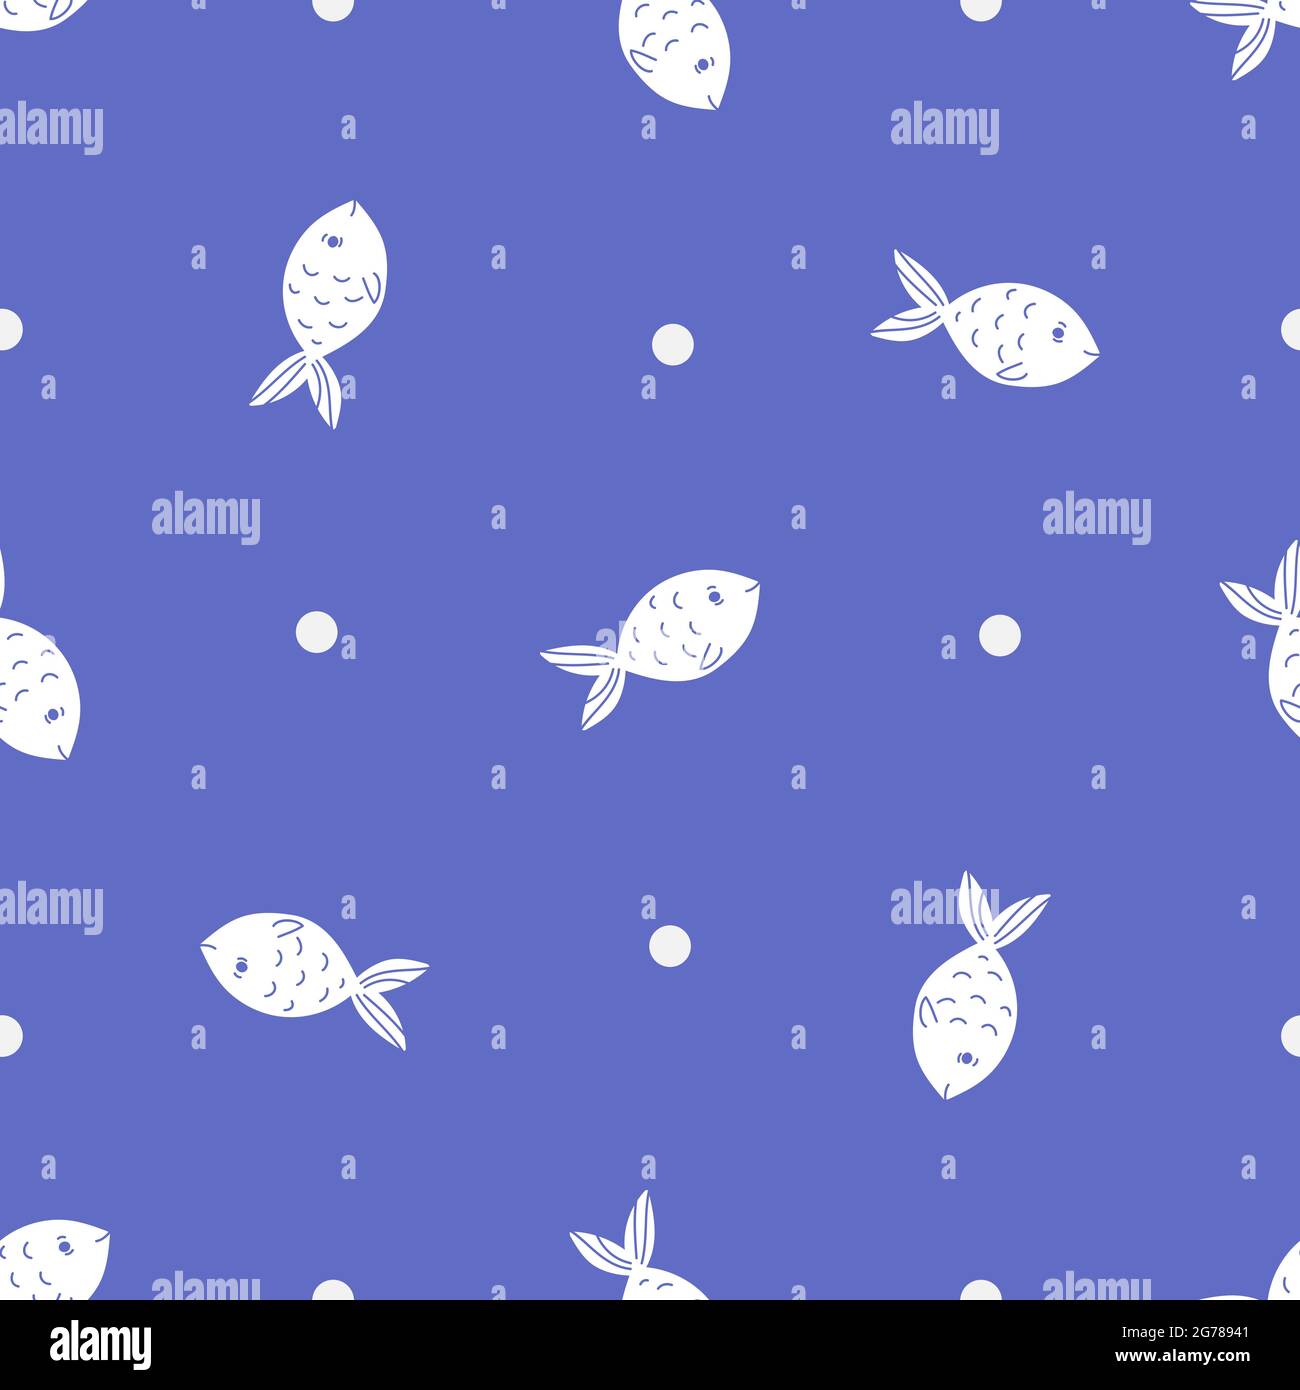 Fisch nahtlose Vektor-Muster in einem flachen Minimalismus-Stil mit Duo-Farben Farbe - weiß und blau. Zwei Farben niedlich und Spaß Meeresfrüchte Hintergrund, gut für PR Stock Vektor